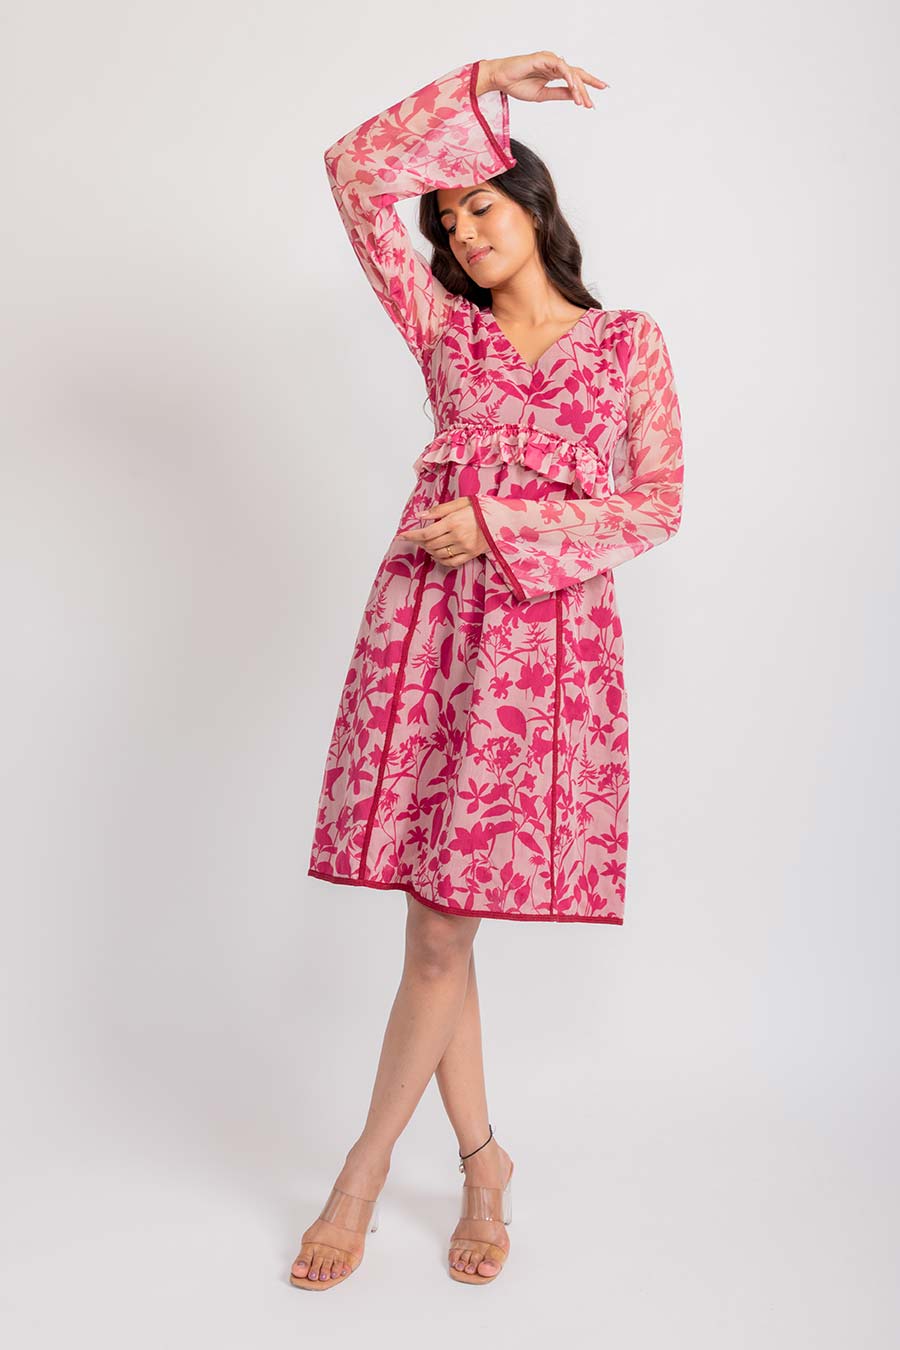 Elisa Pink Chiffon Lacy Dress